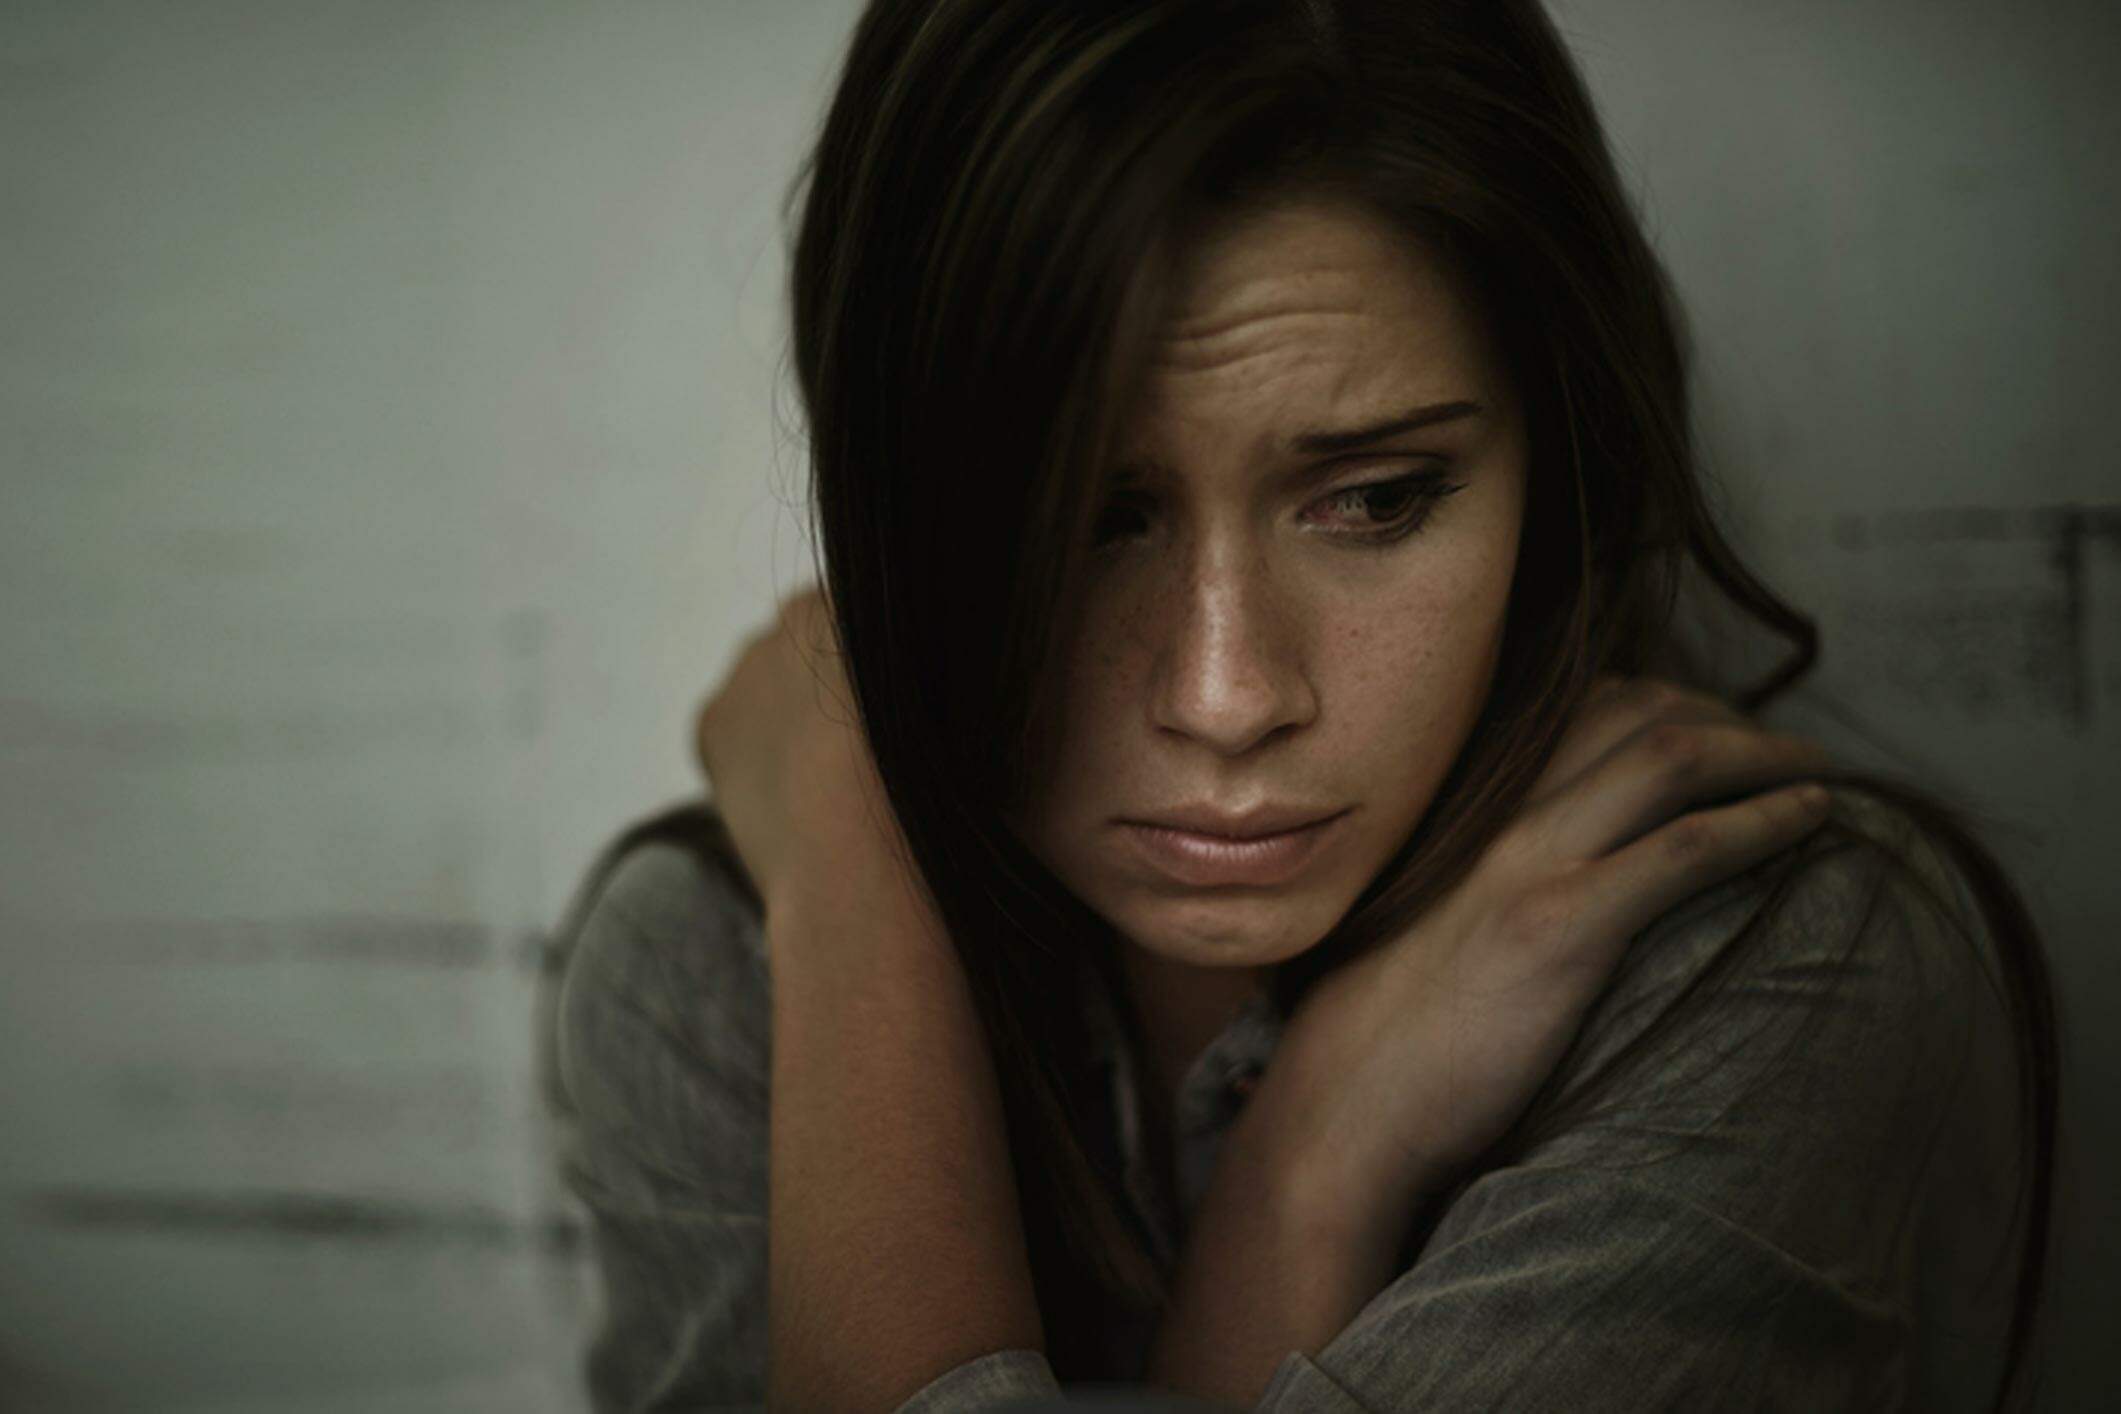 Descubra aqui quais são os principais sintomas de esquizofrenia